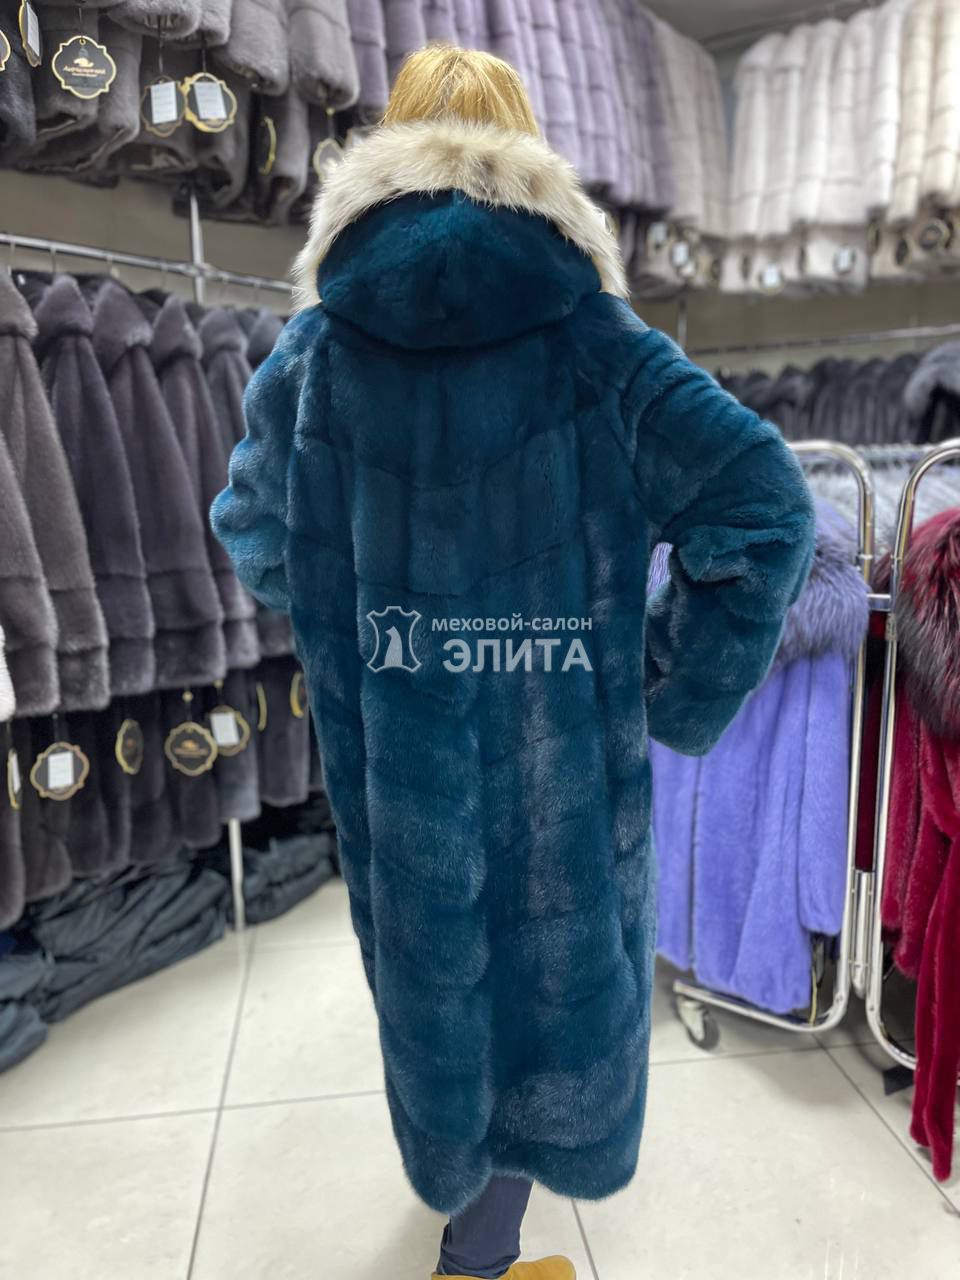 Пальто из норки S-80619 р-р 46-52, цена 142650 рублей в интернет-магазине кожи и меха ЭЛИТА. Вид 2